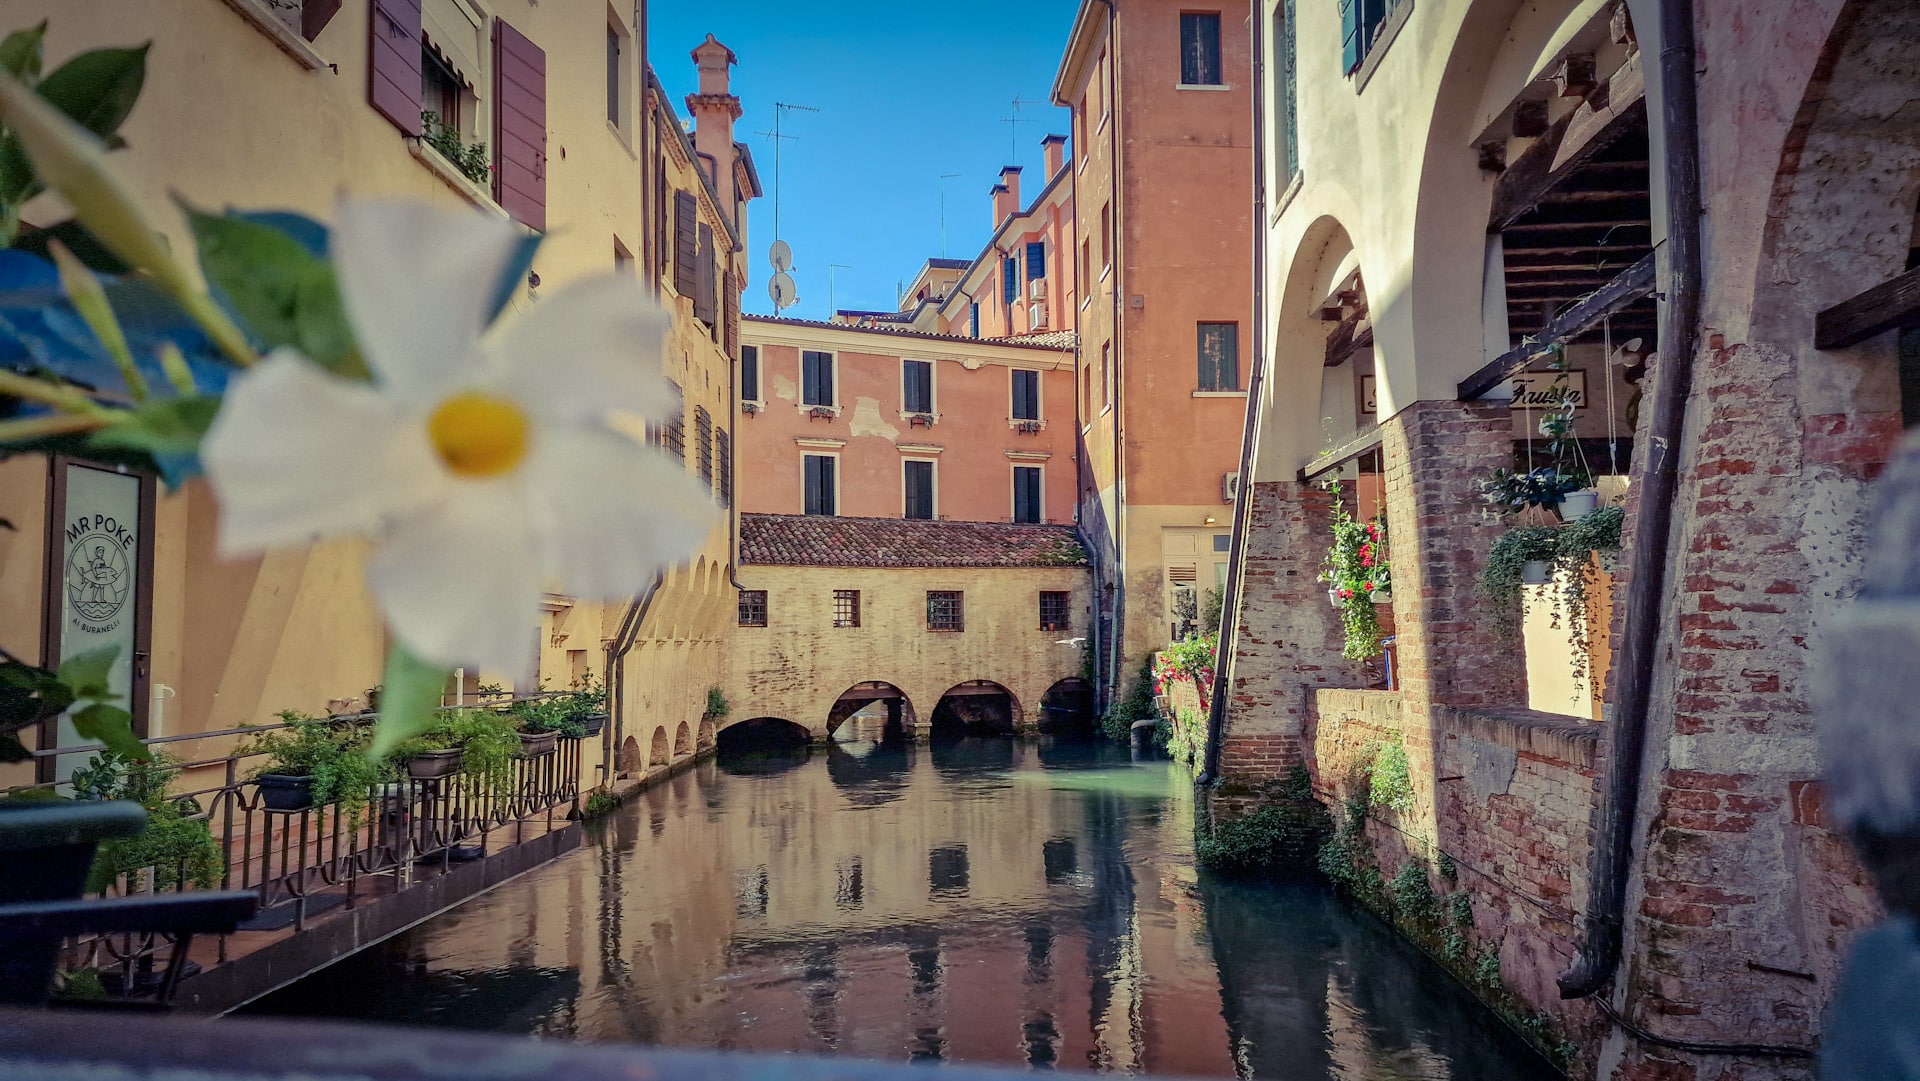 El casco antiguo de Treviso es una zona encantadora y pintoresca, perfecta para quienes deseen explorar el lado histórico de la ciudad